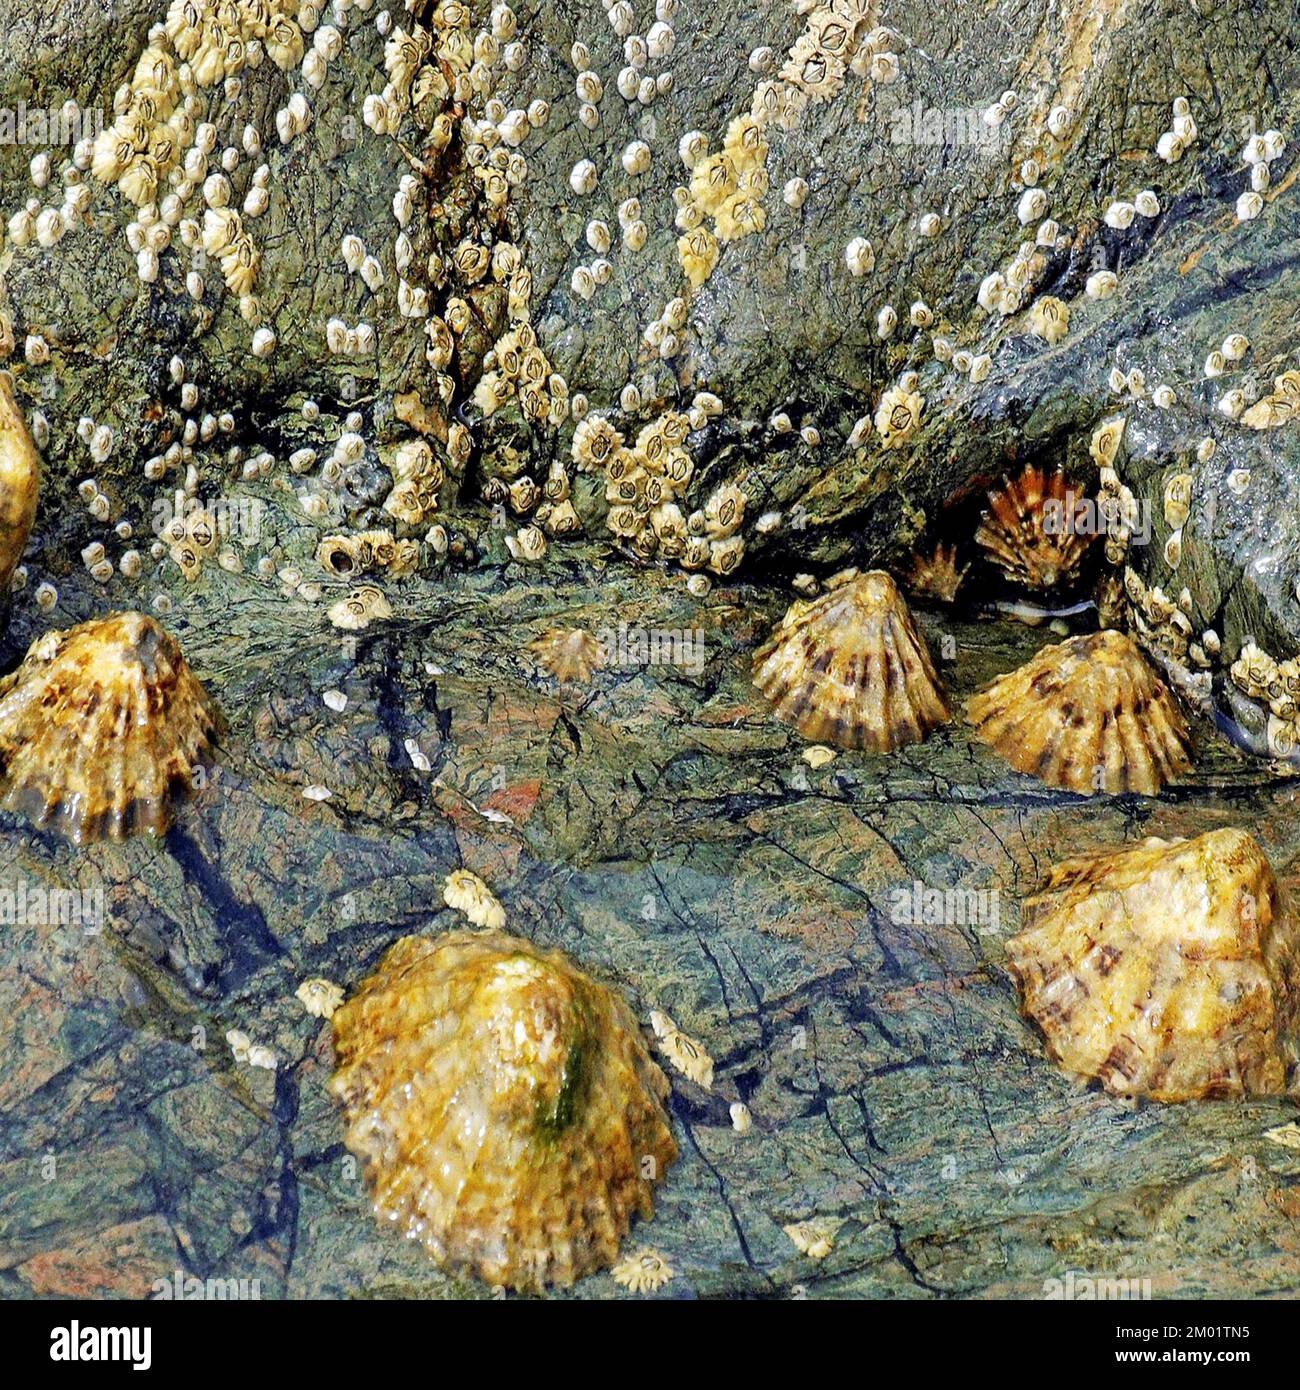 Photographie en couleur d'un bassin rocheux côtier l'image est un mélange de créatures marines et de géologie montrant des motifs et des textures de roche. Banque D'Images